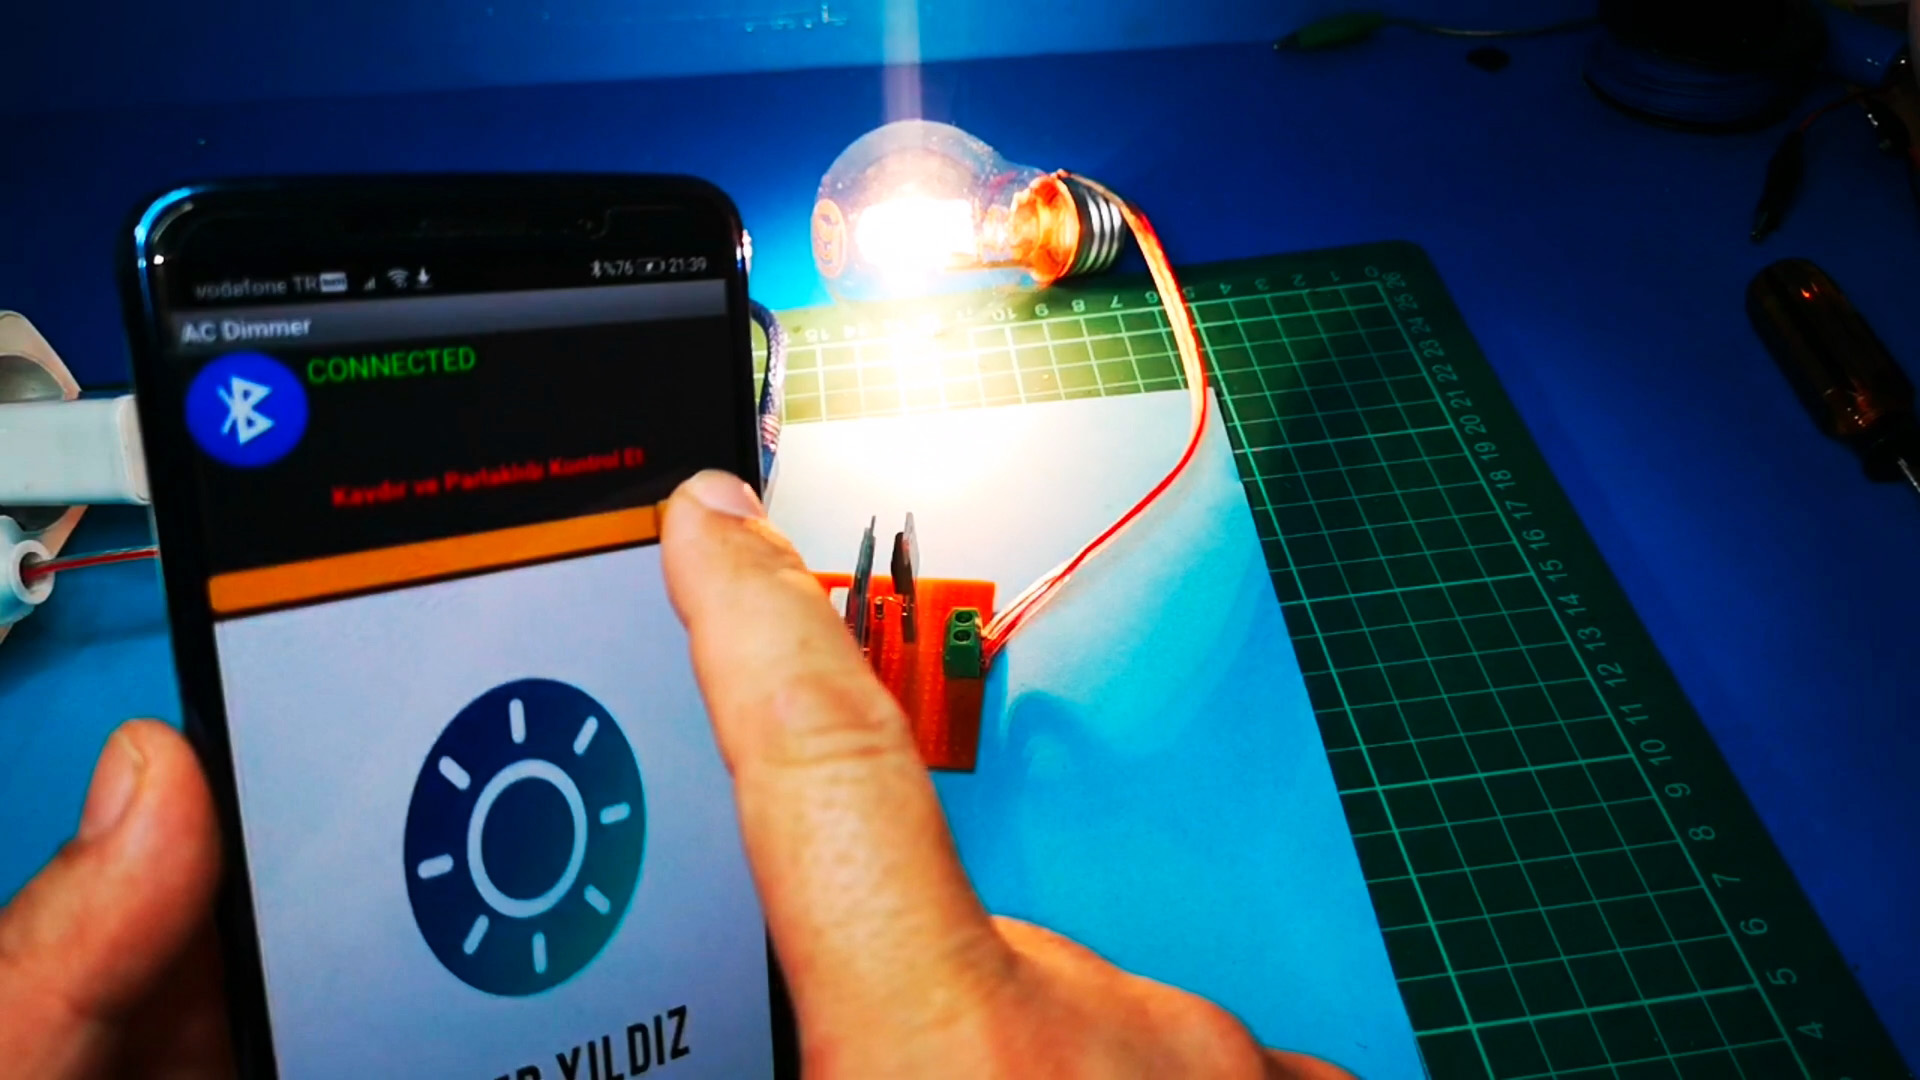 Как сделать простой диммер для управления светом со смартфона на Ардуино